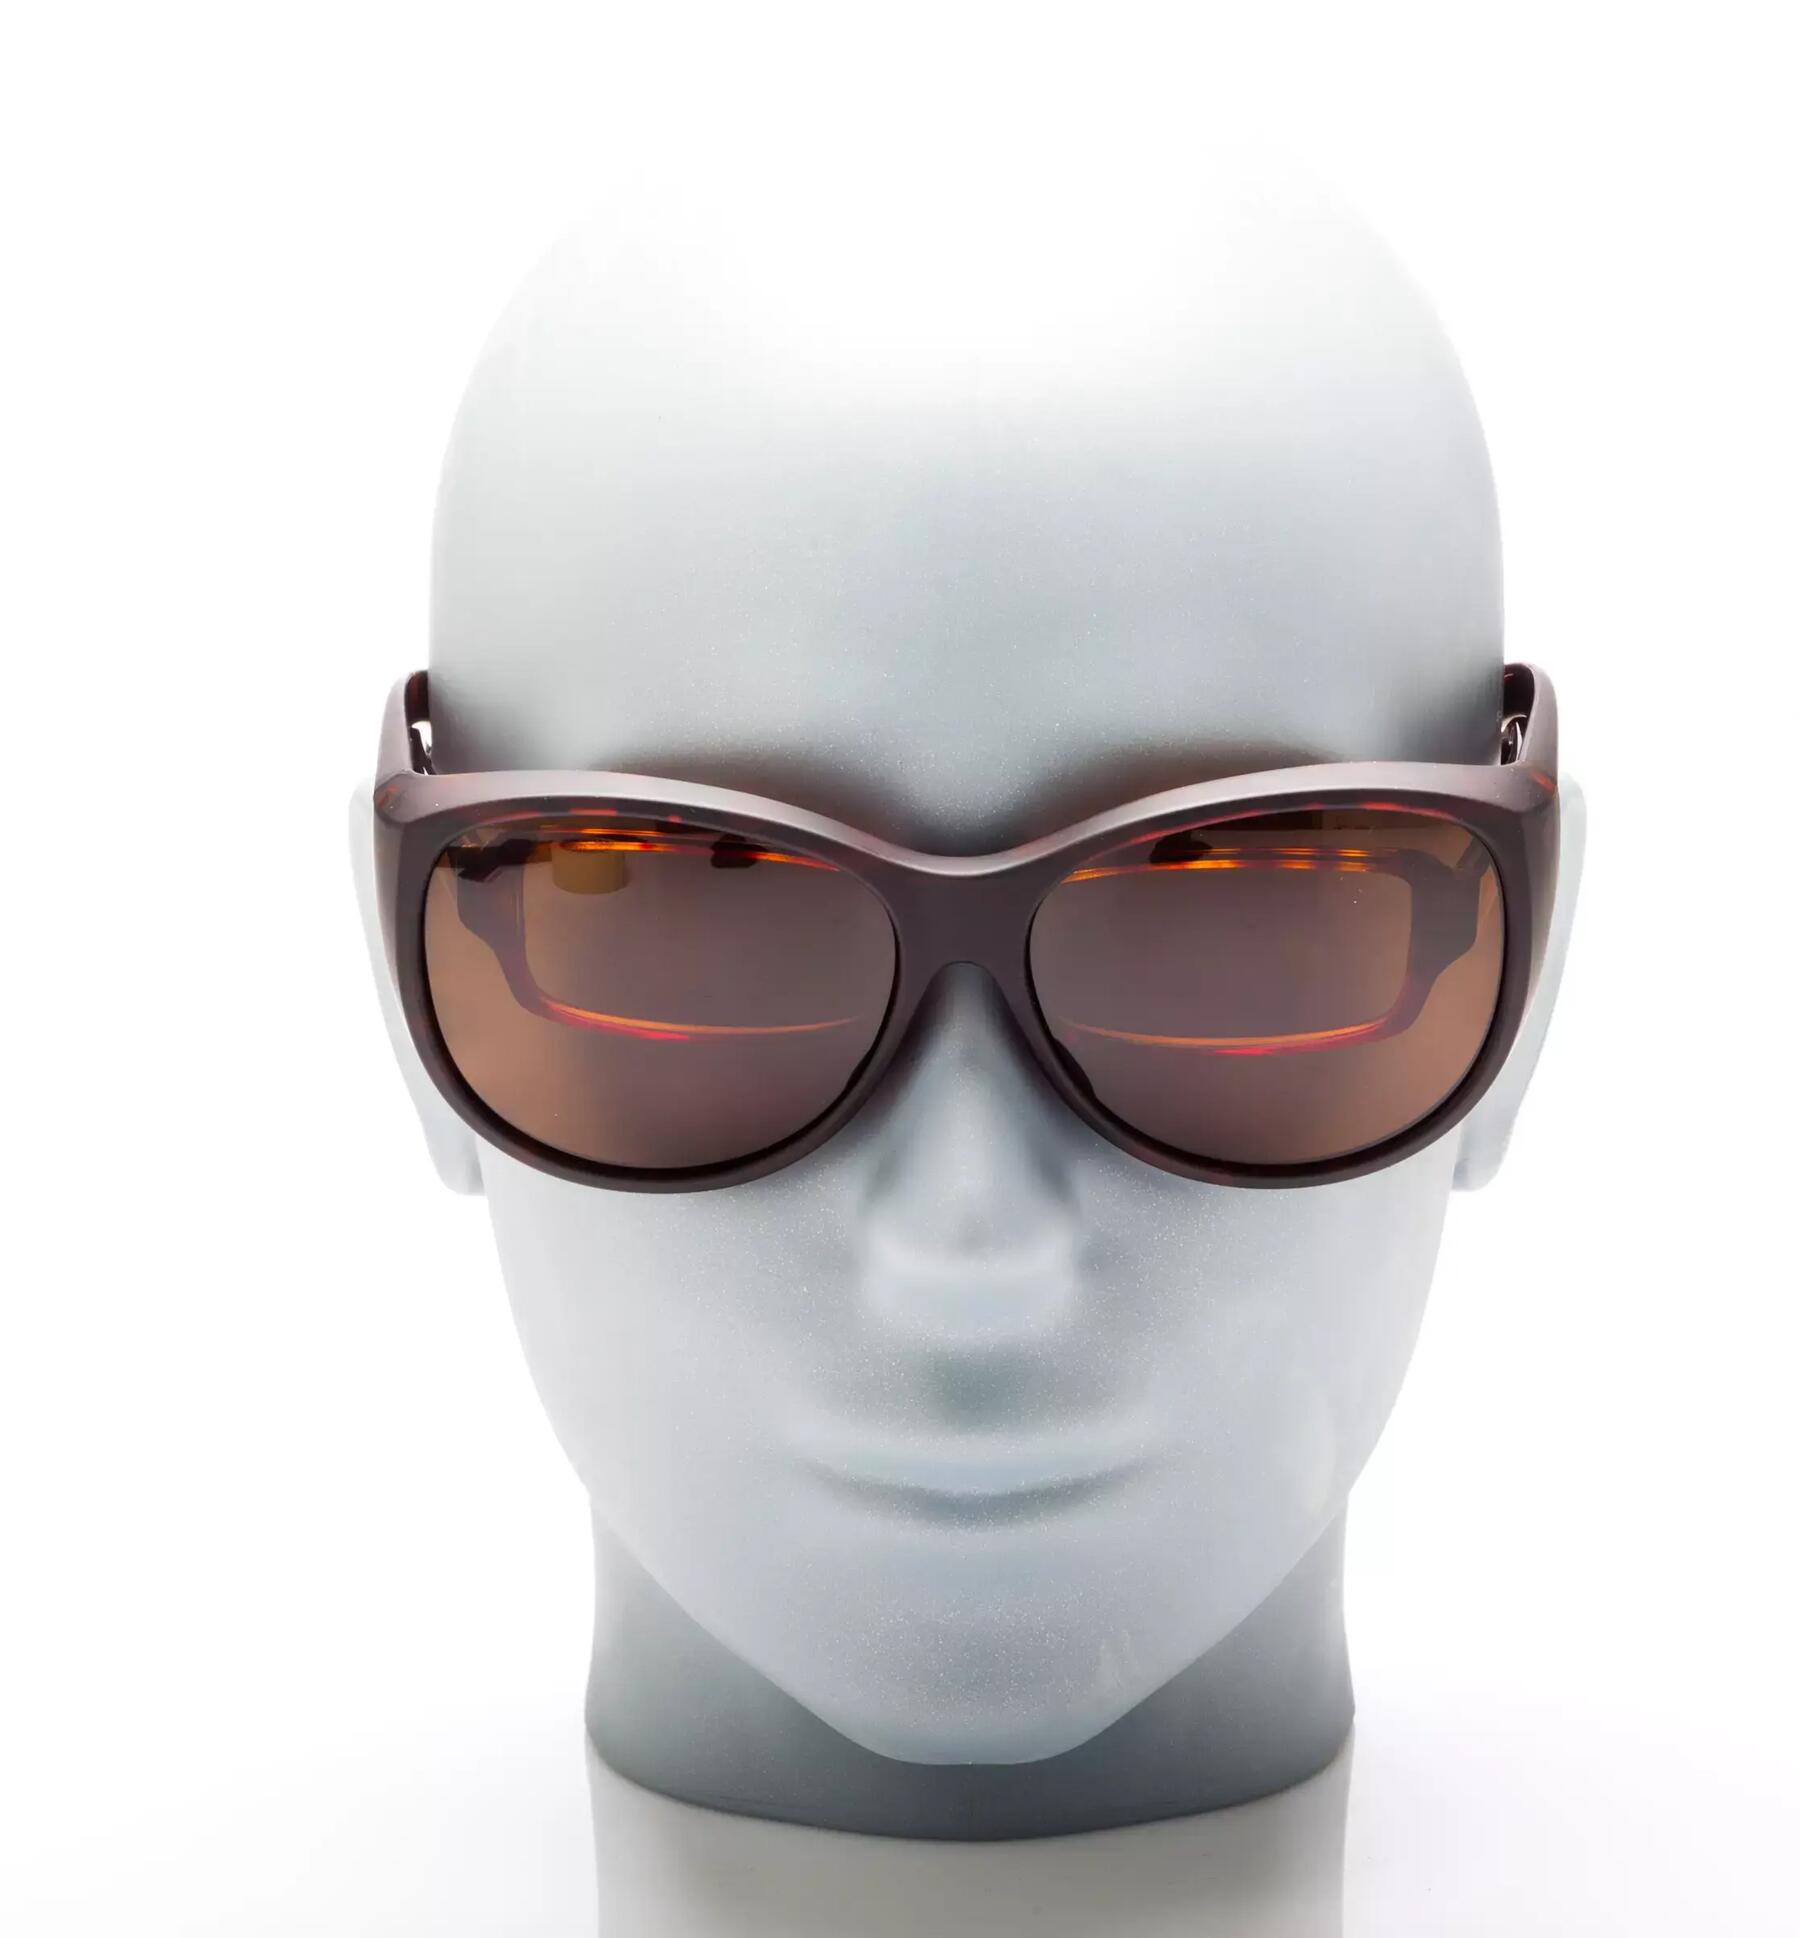 Kopf einer Schaufensterpuppe, die eine Brille und darüber eine Überbrille als Sonnenbrille trägt